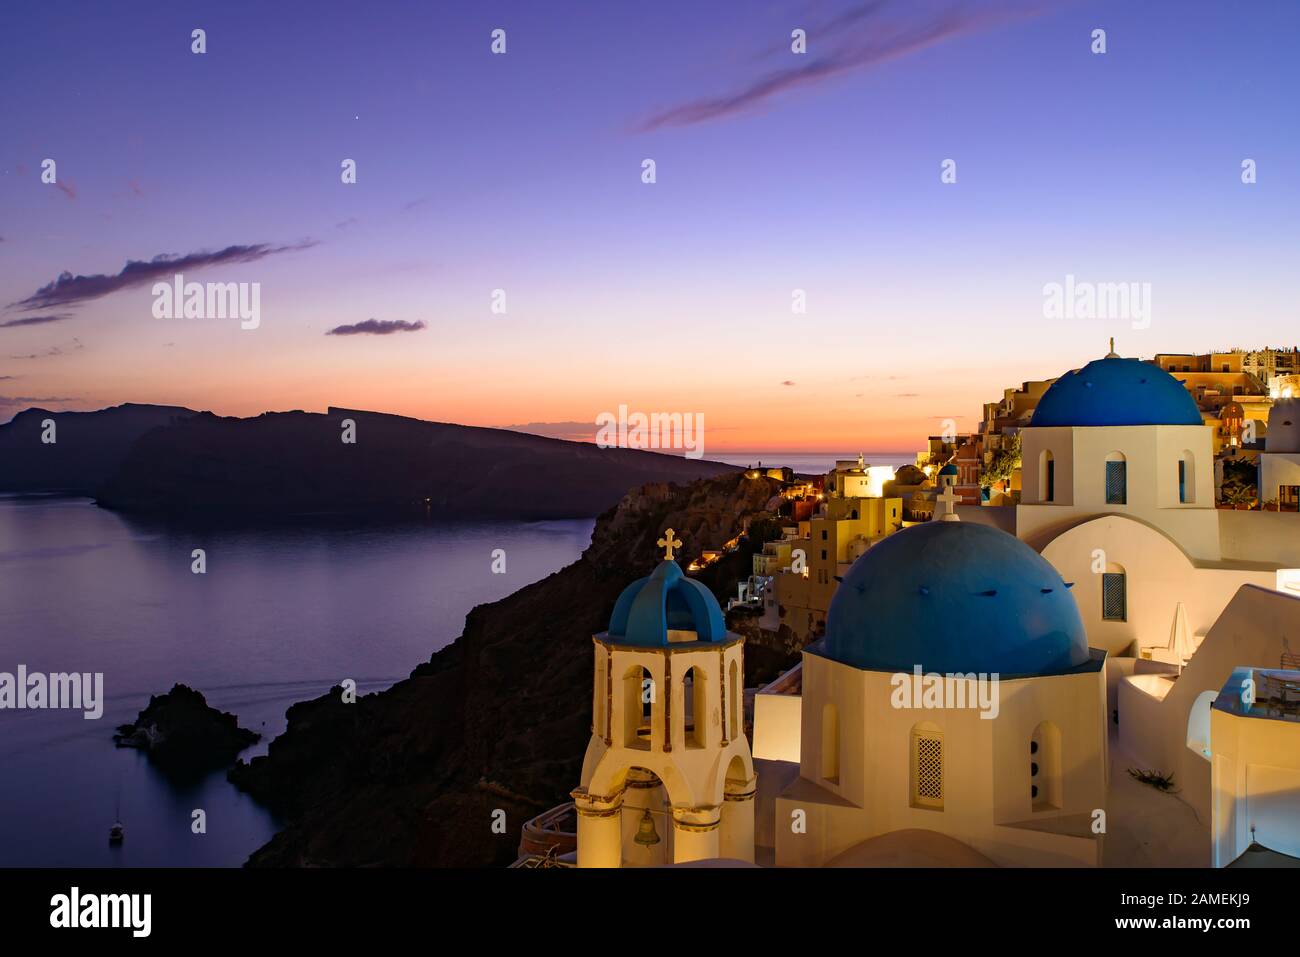 Églises au dôme bleu et maisons blanches traditionnelles face à la mer Égée avec lumière chaude au coucher du soleil à Oia, Santorin, Grèce Banque D'Images